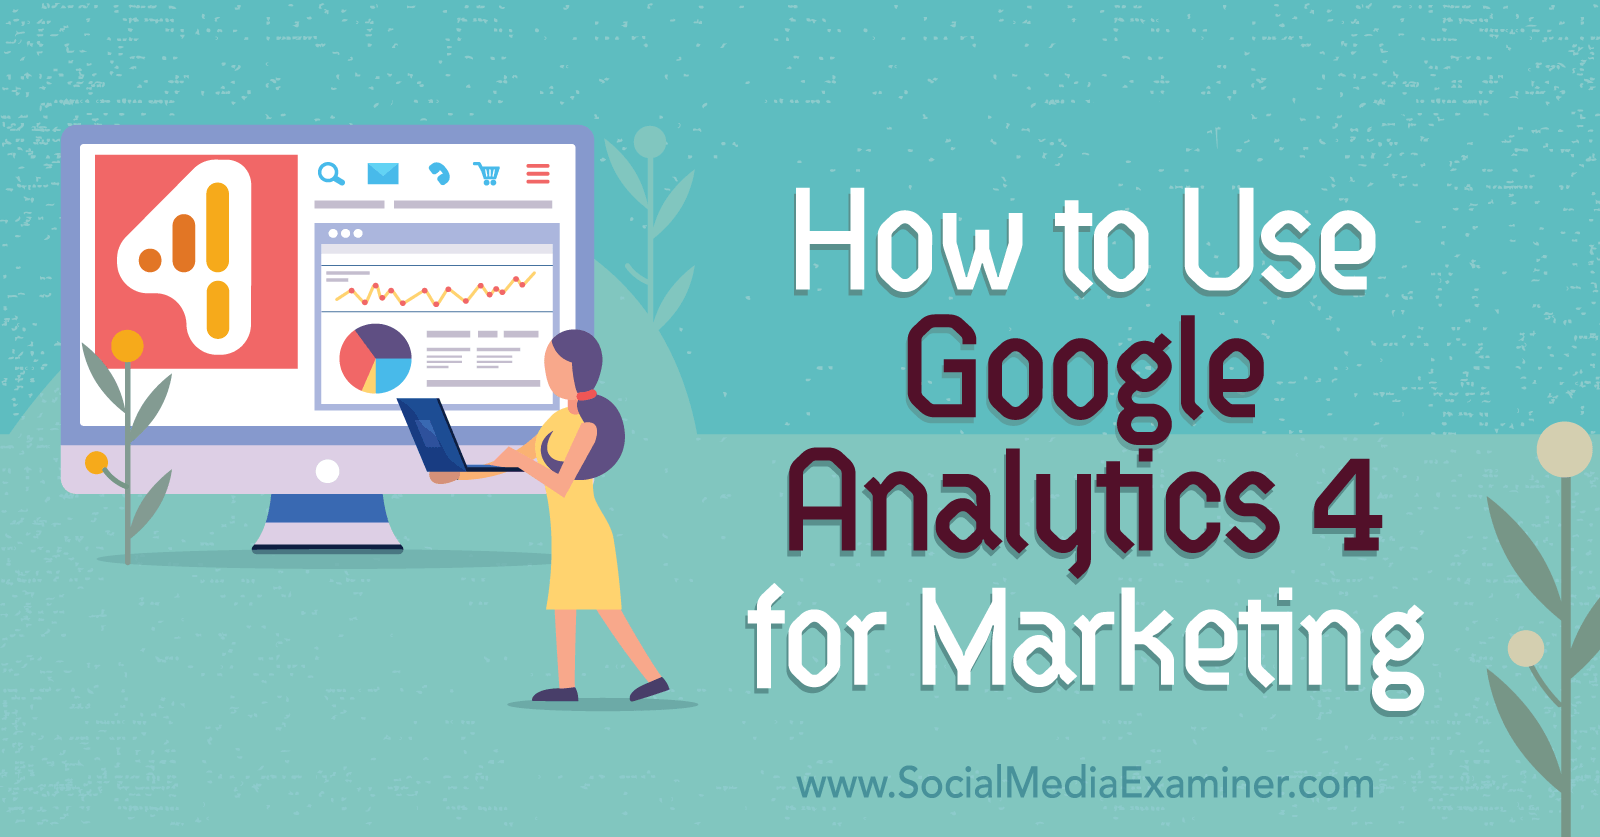 How to Use Google Analytics 4 for Marketing-Social Media Examiner